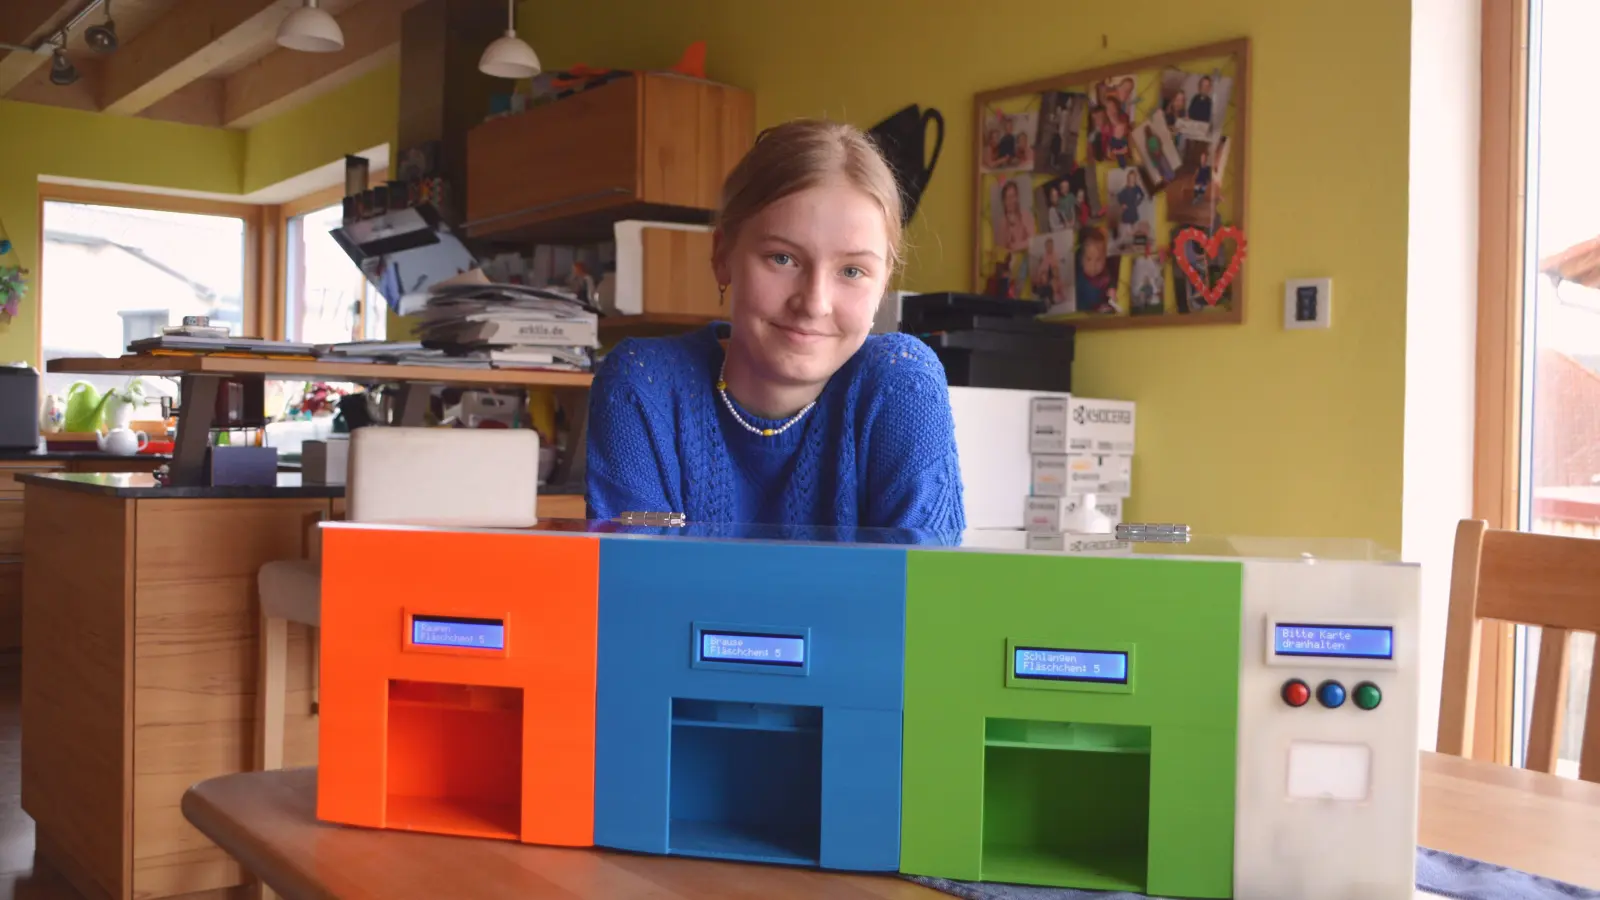 Die 15-jährige Emilie Schmiedeke aus dem Markt Nordheimer Ortsteil Ulsenheim und ihr selbst gebauter Drei-Kammer-Süßigkeiten-Automat, der sich über eine Handy-Applikation steuern lässt. (Foto: Johannes Zimmermann)